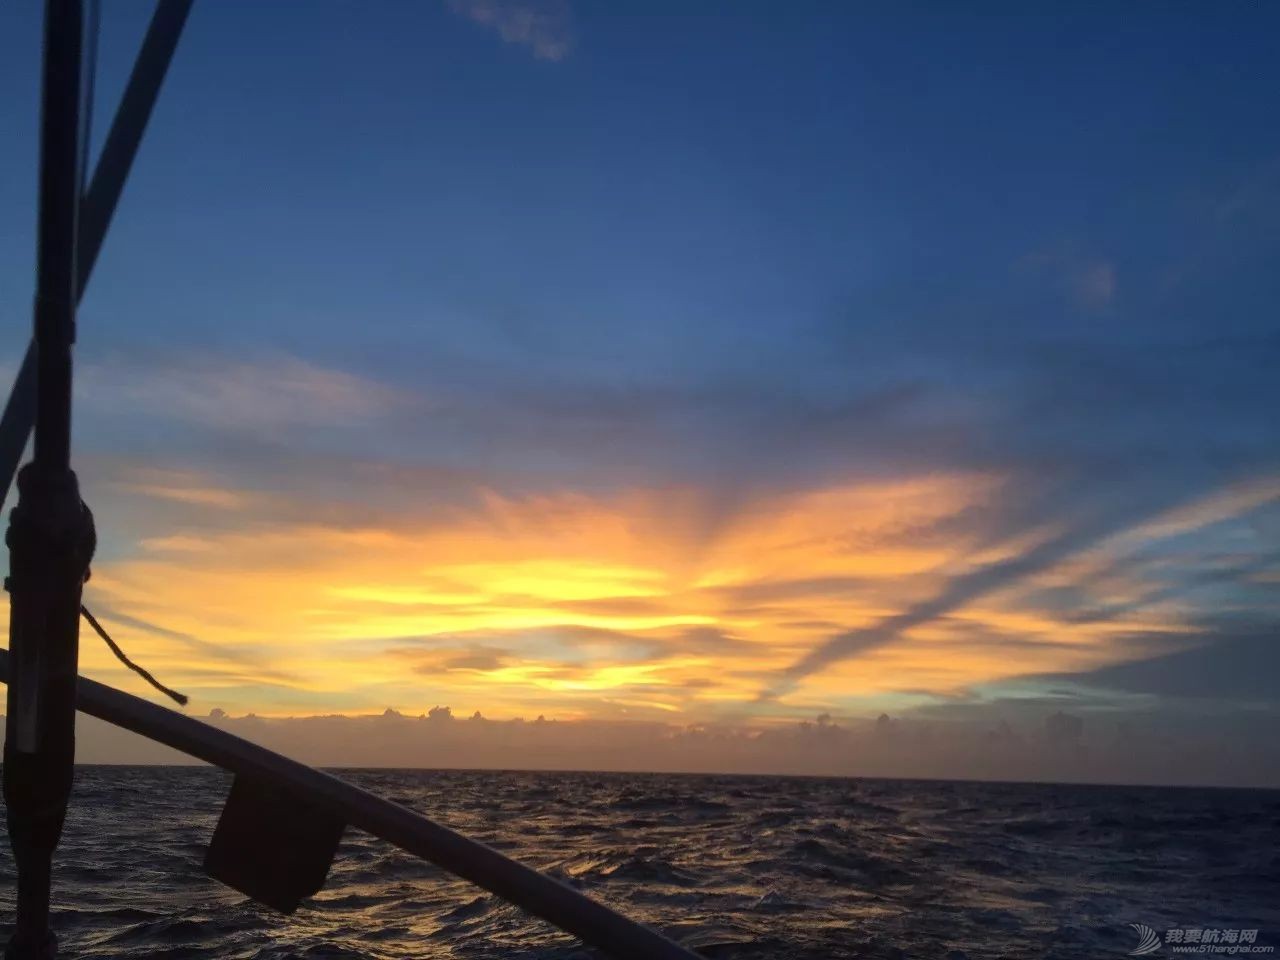 太阳初升时,忽然有十万支金喇叭齐鸣!我在帆船上迎接黎明……w5.jpg